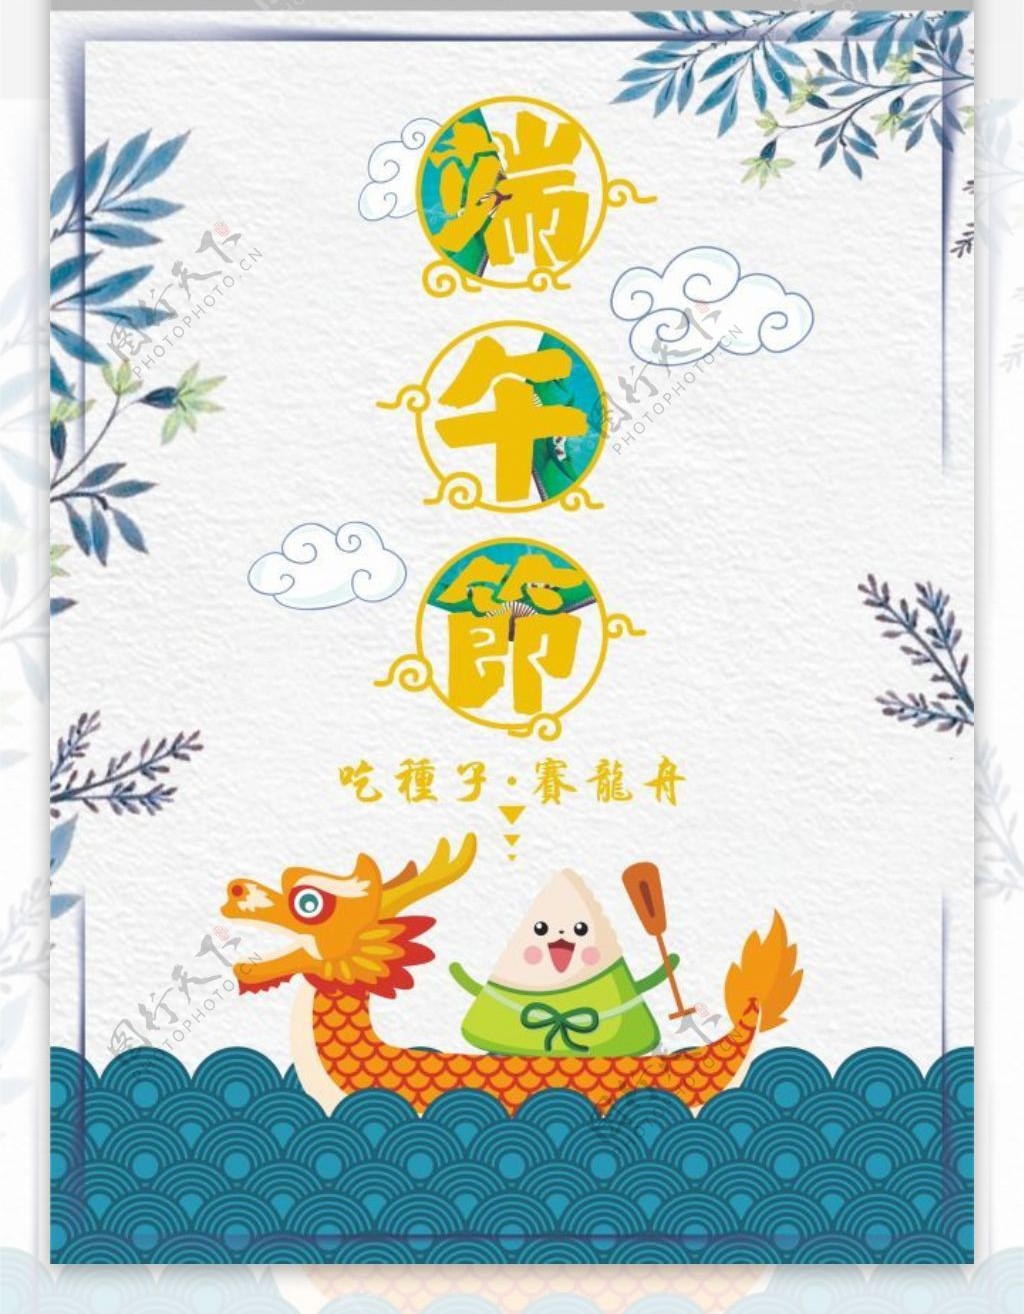 中国风创意五月初五端午节海报